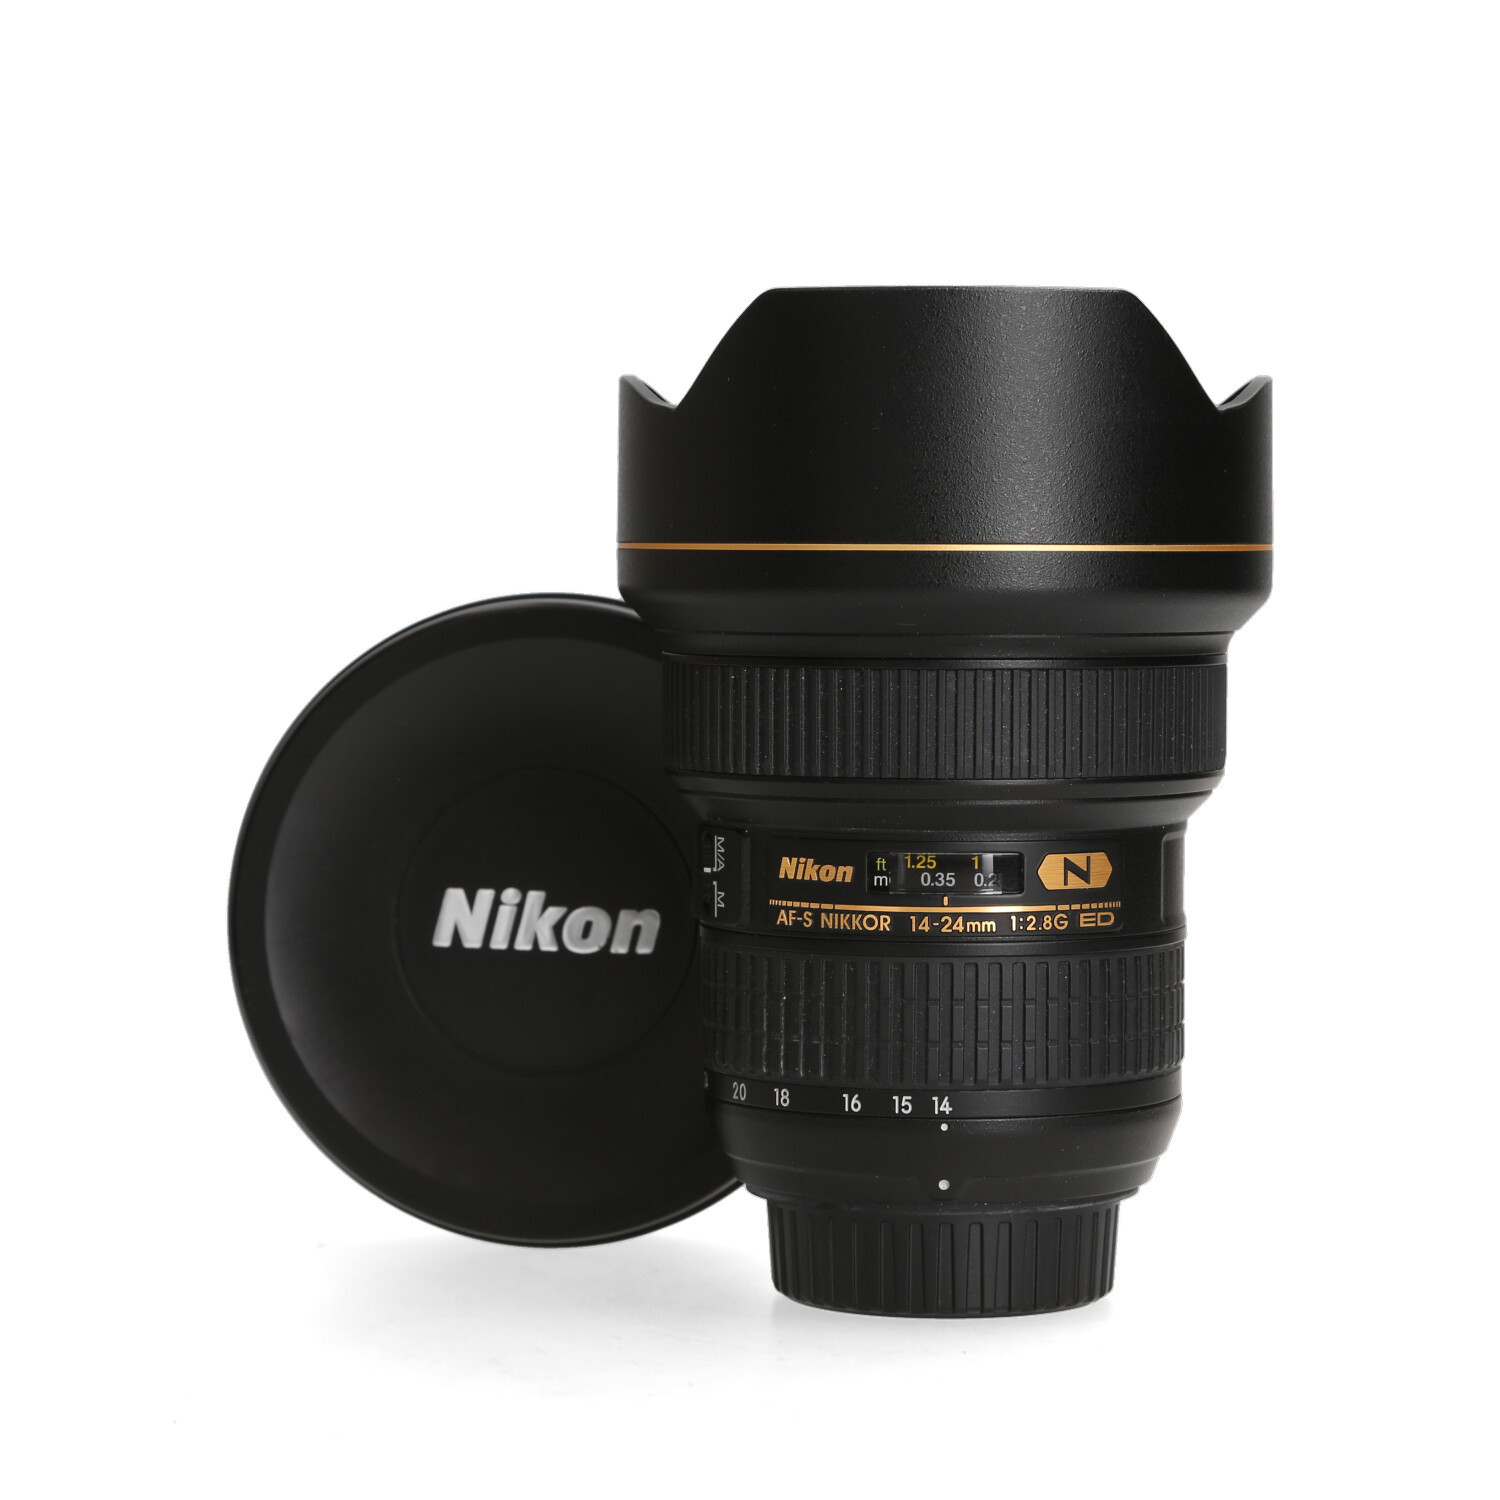 Nikon Nikon 14-24mm 2.8 G ED